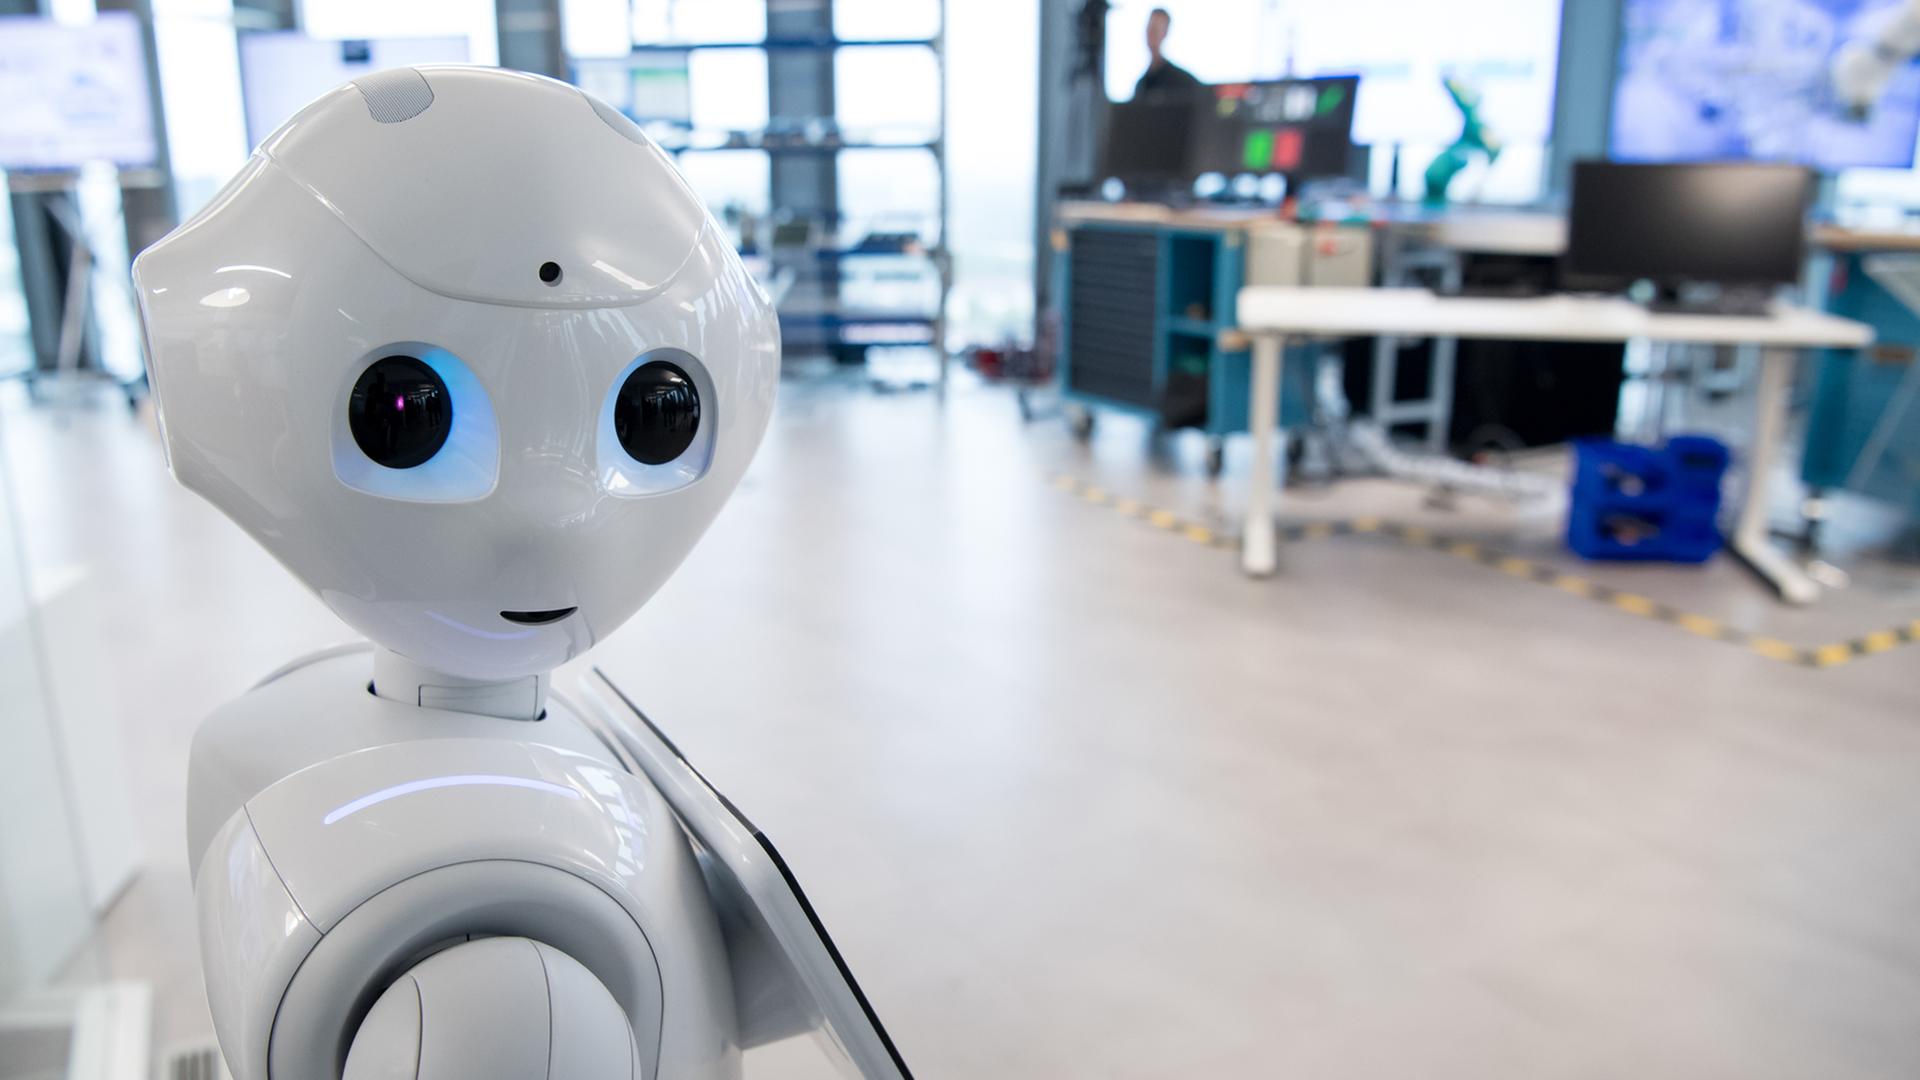 Der Roboter "Pepper" steht am 26.04.2017 in München (Bayern) in einem Showroom in der Firmenzentrale von IBM. Pepper ist ein humanoider Roboter, der darauf programmiert ist, Menschen und deren Mimik und Gestik zu analysieren